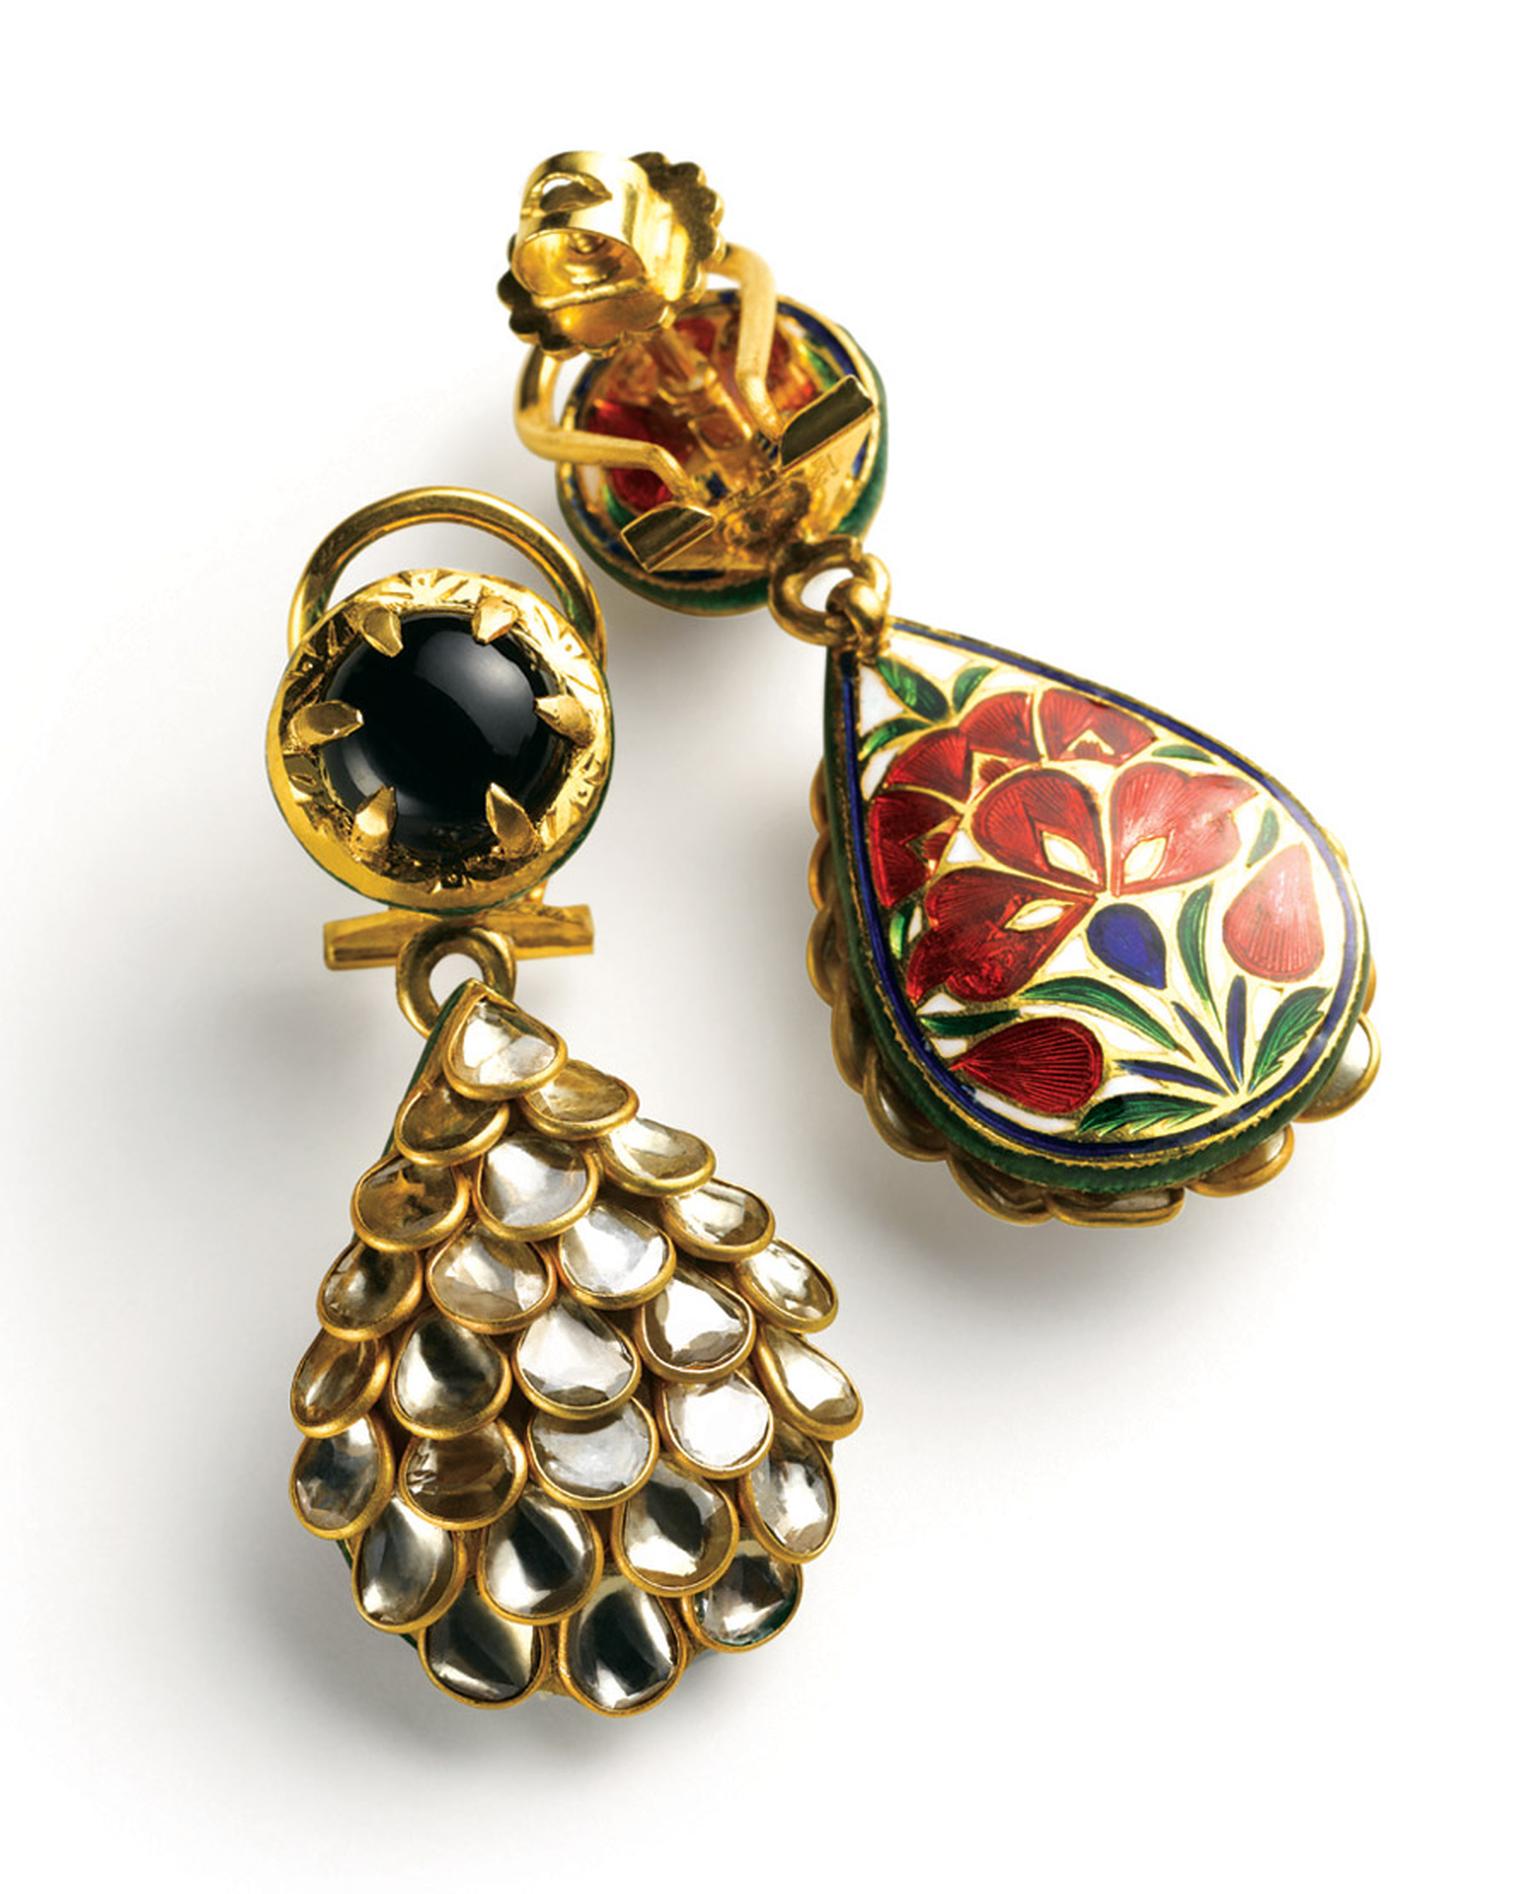 Zoya-16--Polki-earrings-with-meenakari.jpg